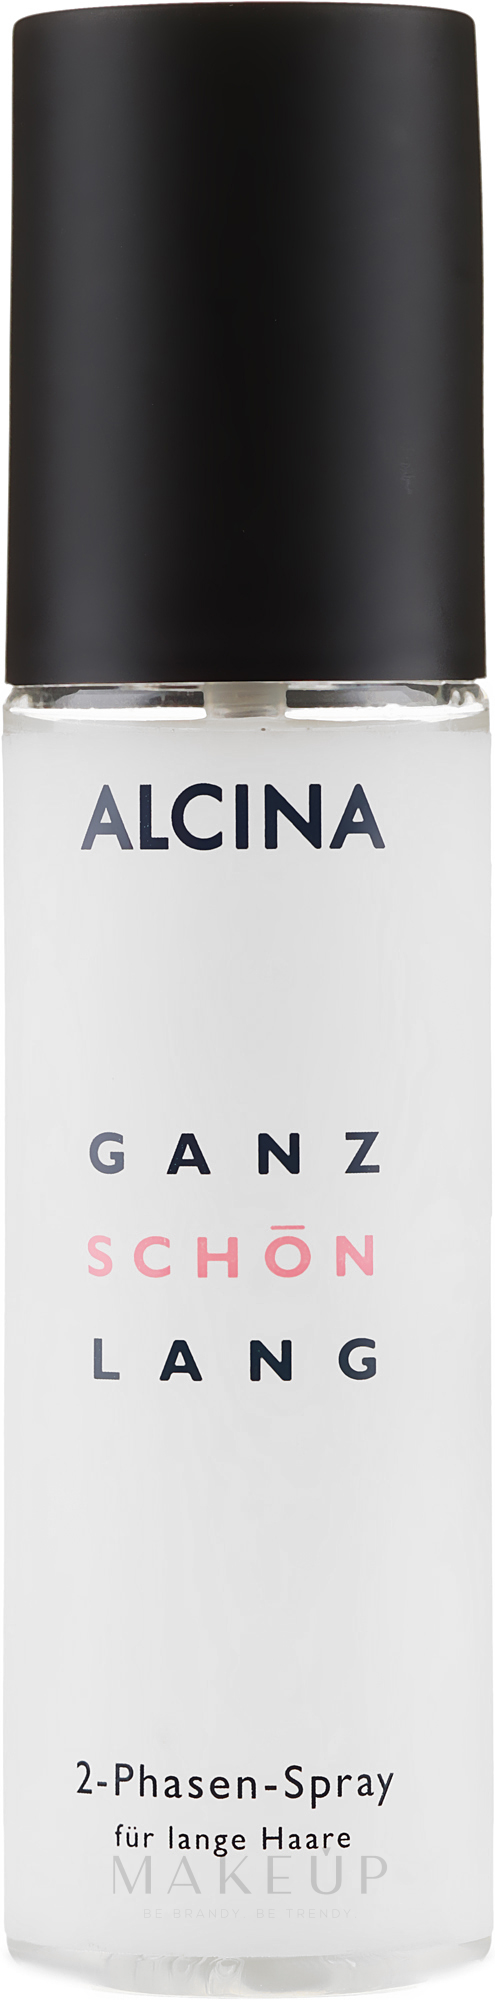 Pflegendes 2-Phasen Spray für lange Haare - Alcina Ganz Schon Lang 2-Phasen-Spray — Foto 125 ml